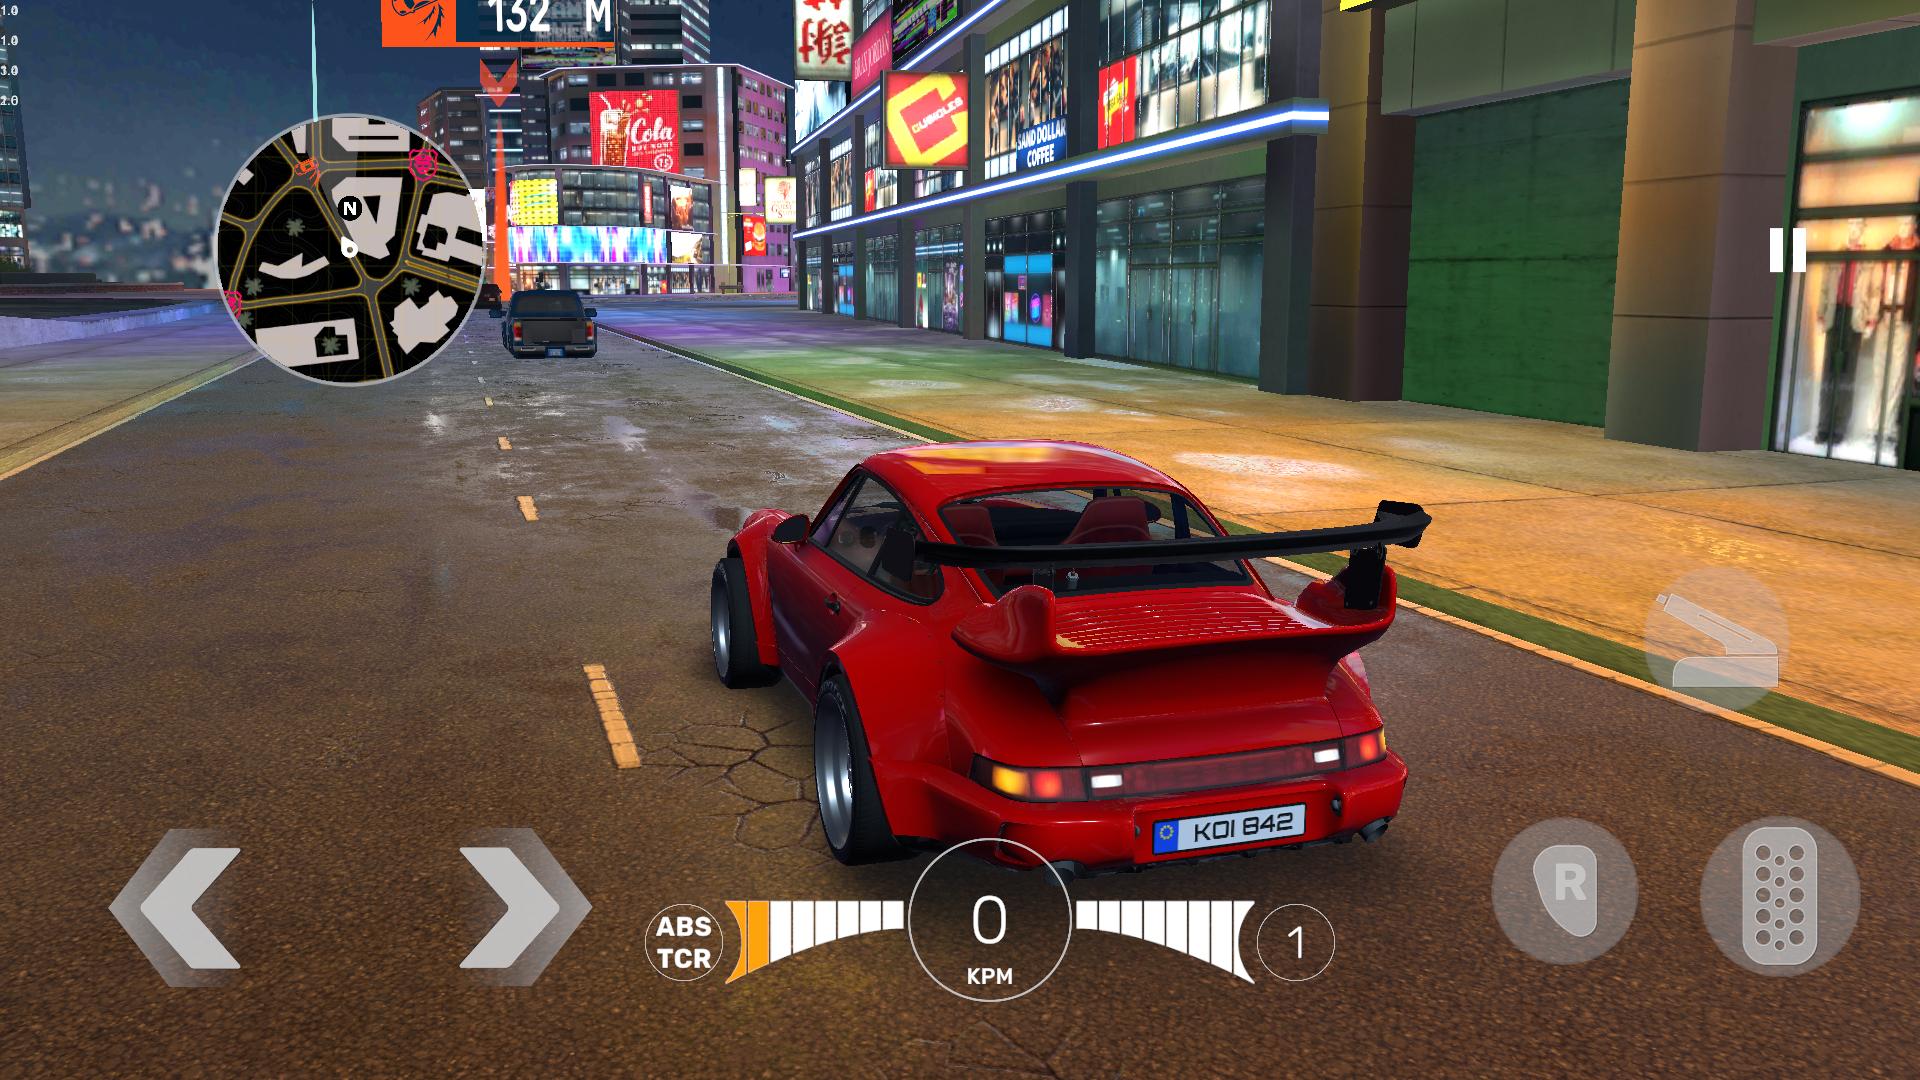 Screenshot 1 of Pro Car Driving Simulator 0.3.6